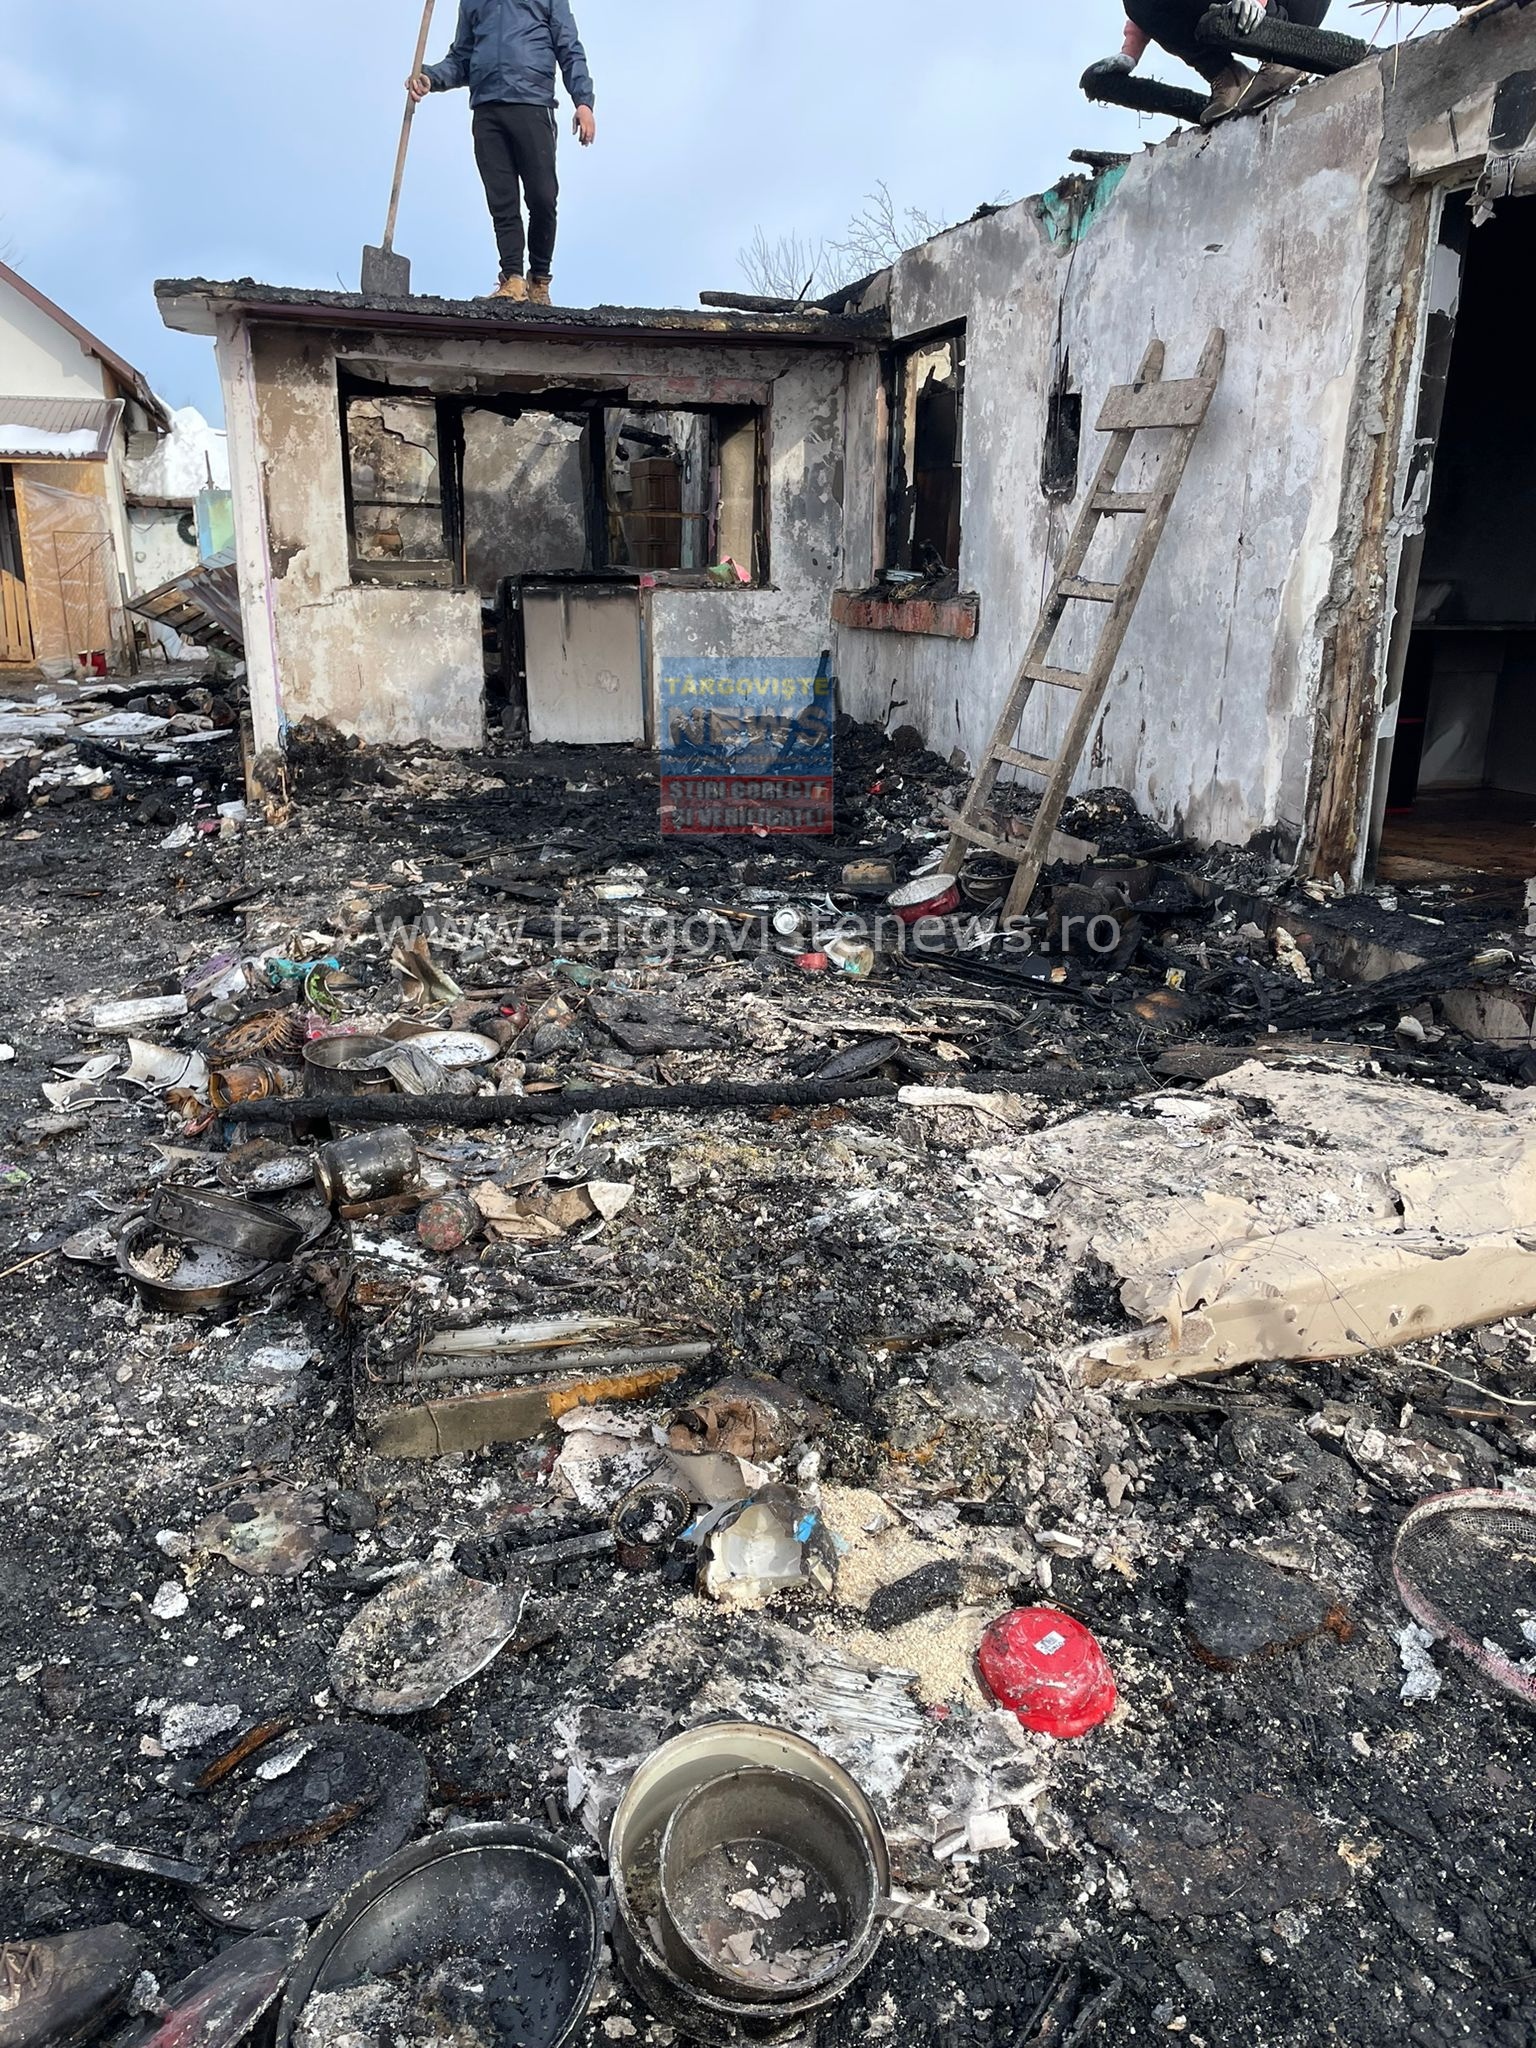 Primarul din Butimanu şi-a donat salariul pentru ajutorarea unei familii rămase sub cerul liber, după un incendiu devastator. “Este cumplit să rămâi în stradă, cu doi copii, în plină iarnă”